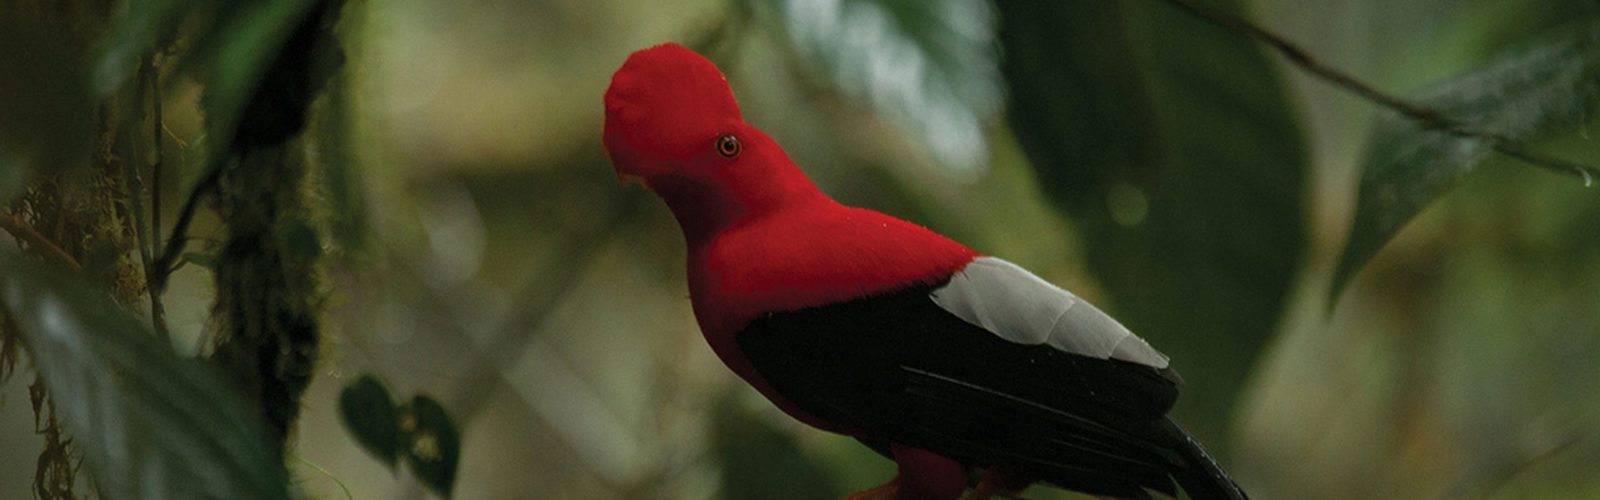 Beautiful bird, Ecuadorian Cloud Forests, Ecuador